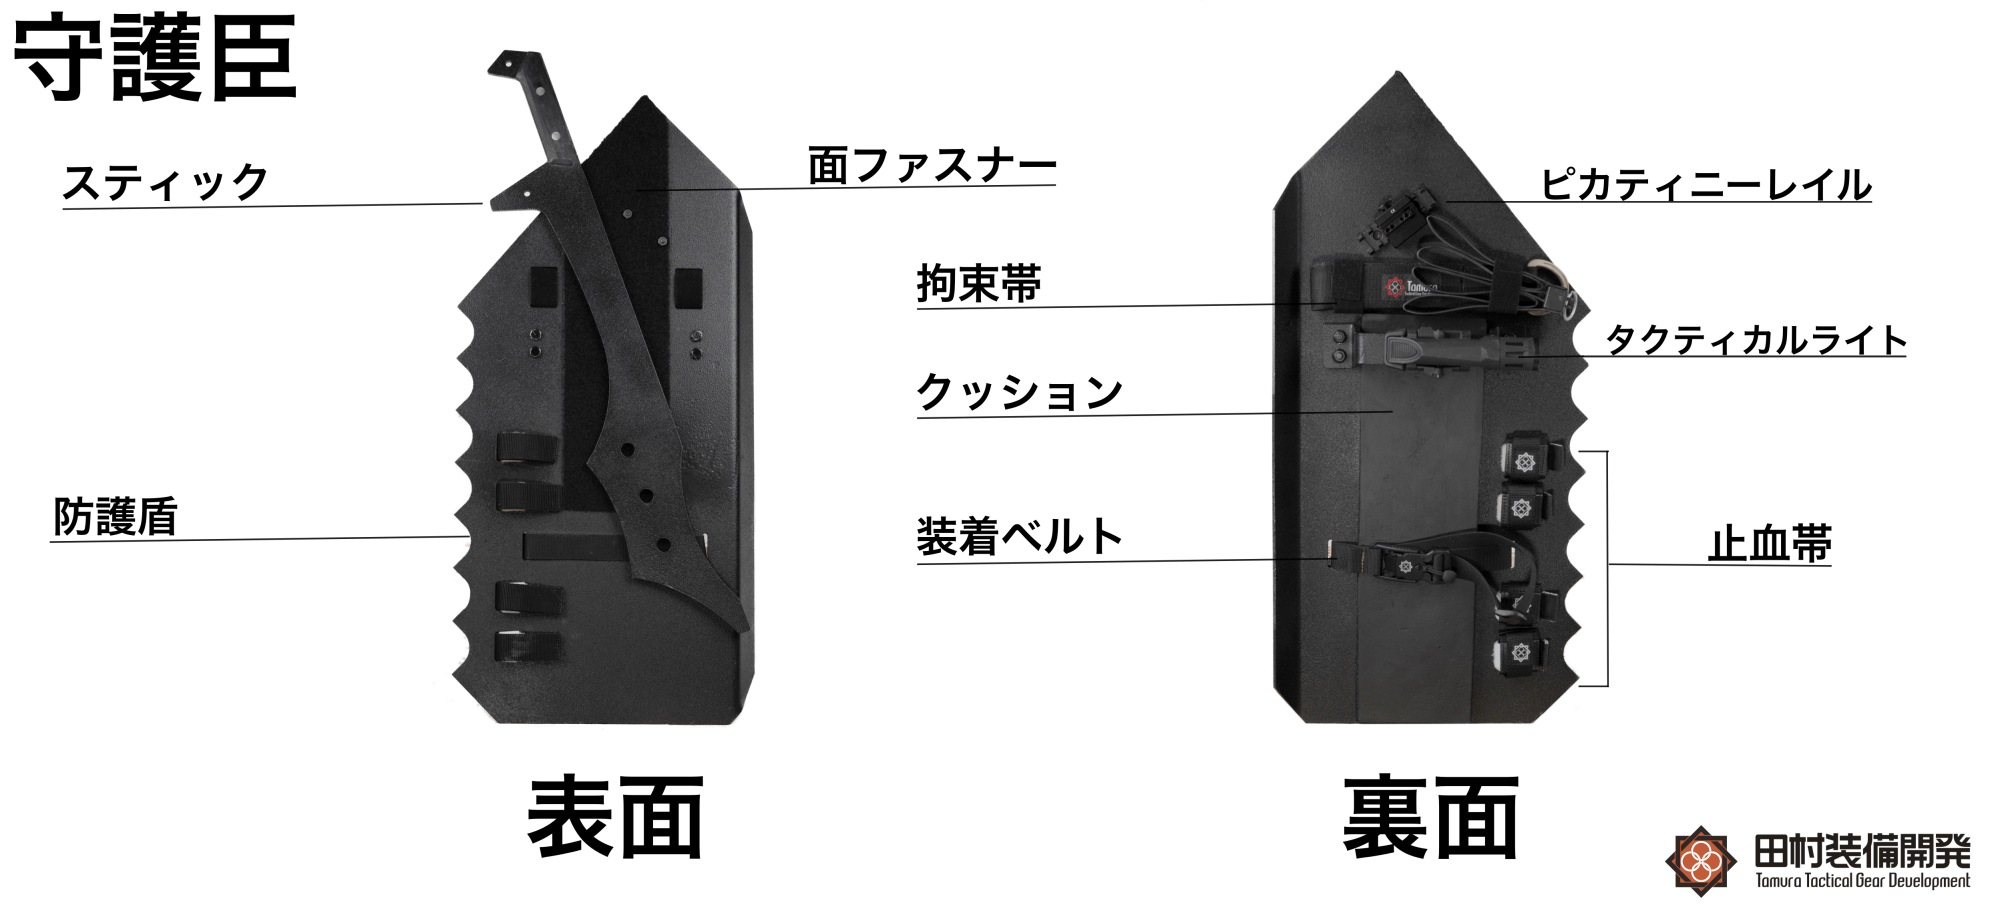 田村装備開発 守護神 特別セット - 個人装備